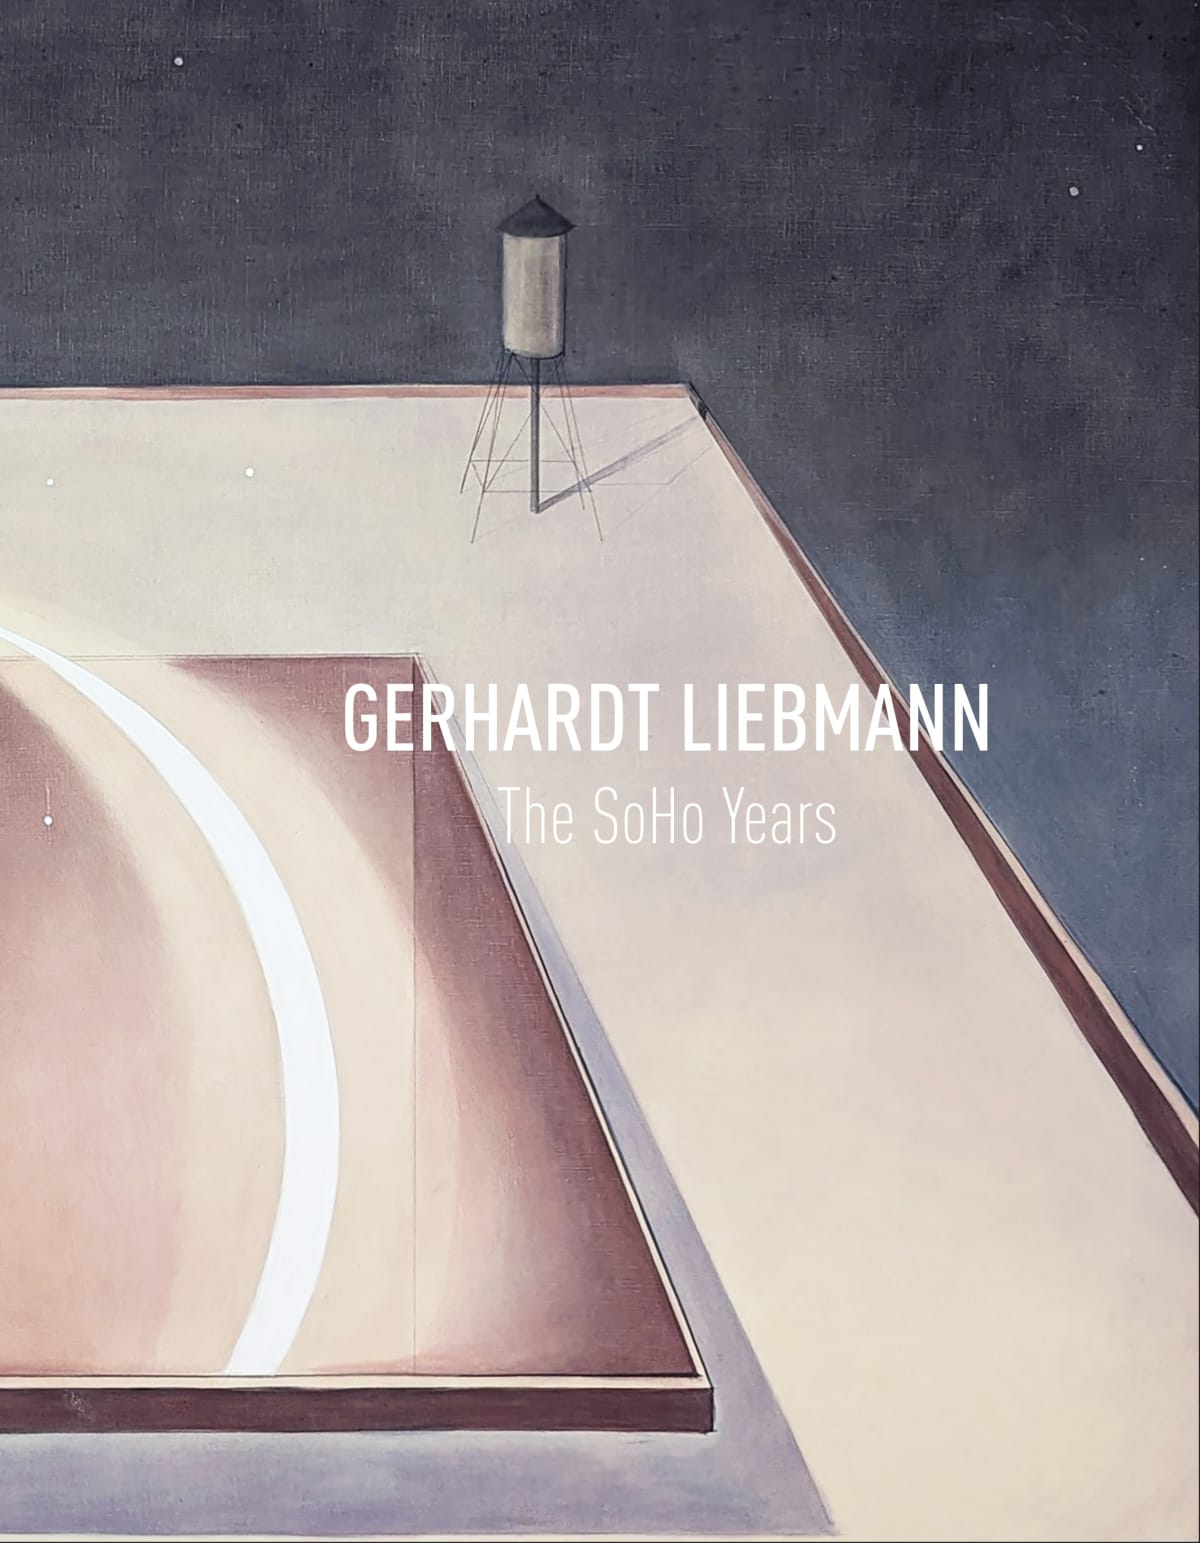 Gerhardt Liebmann